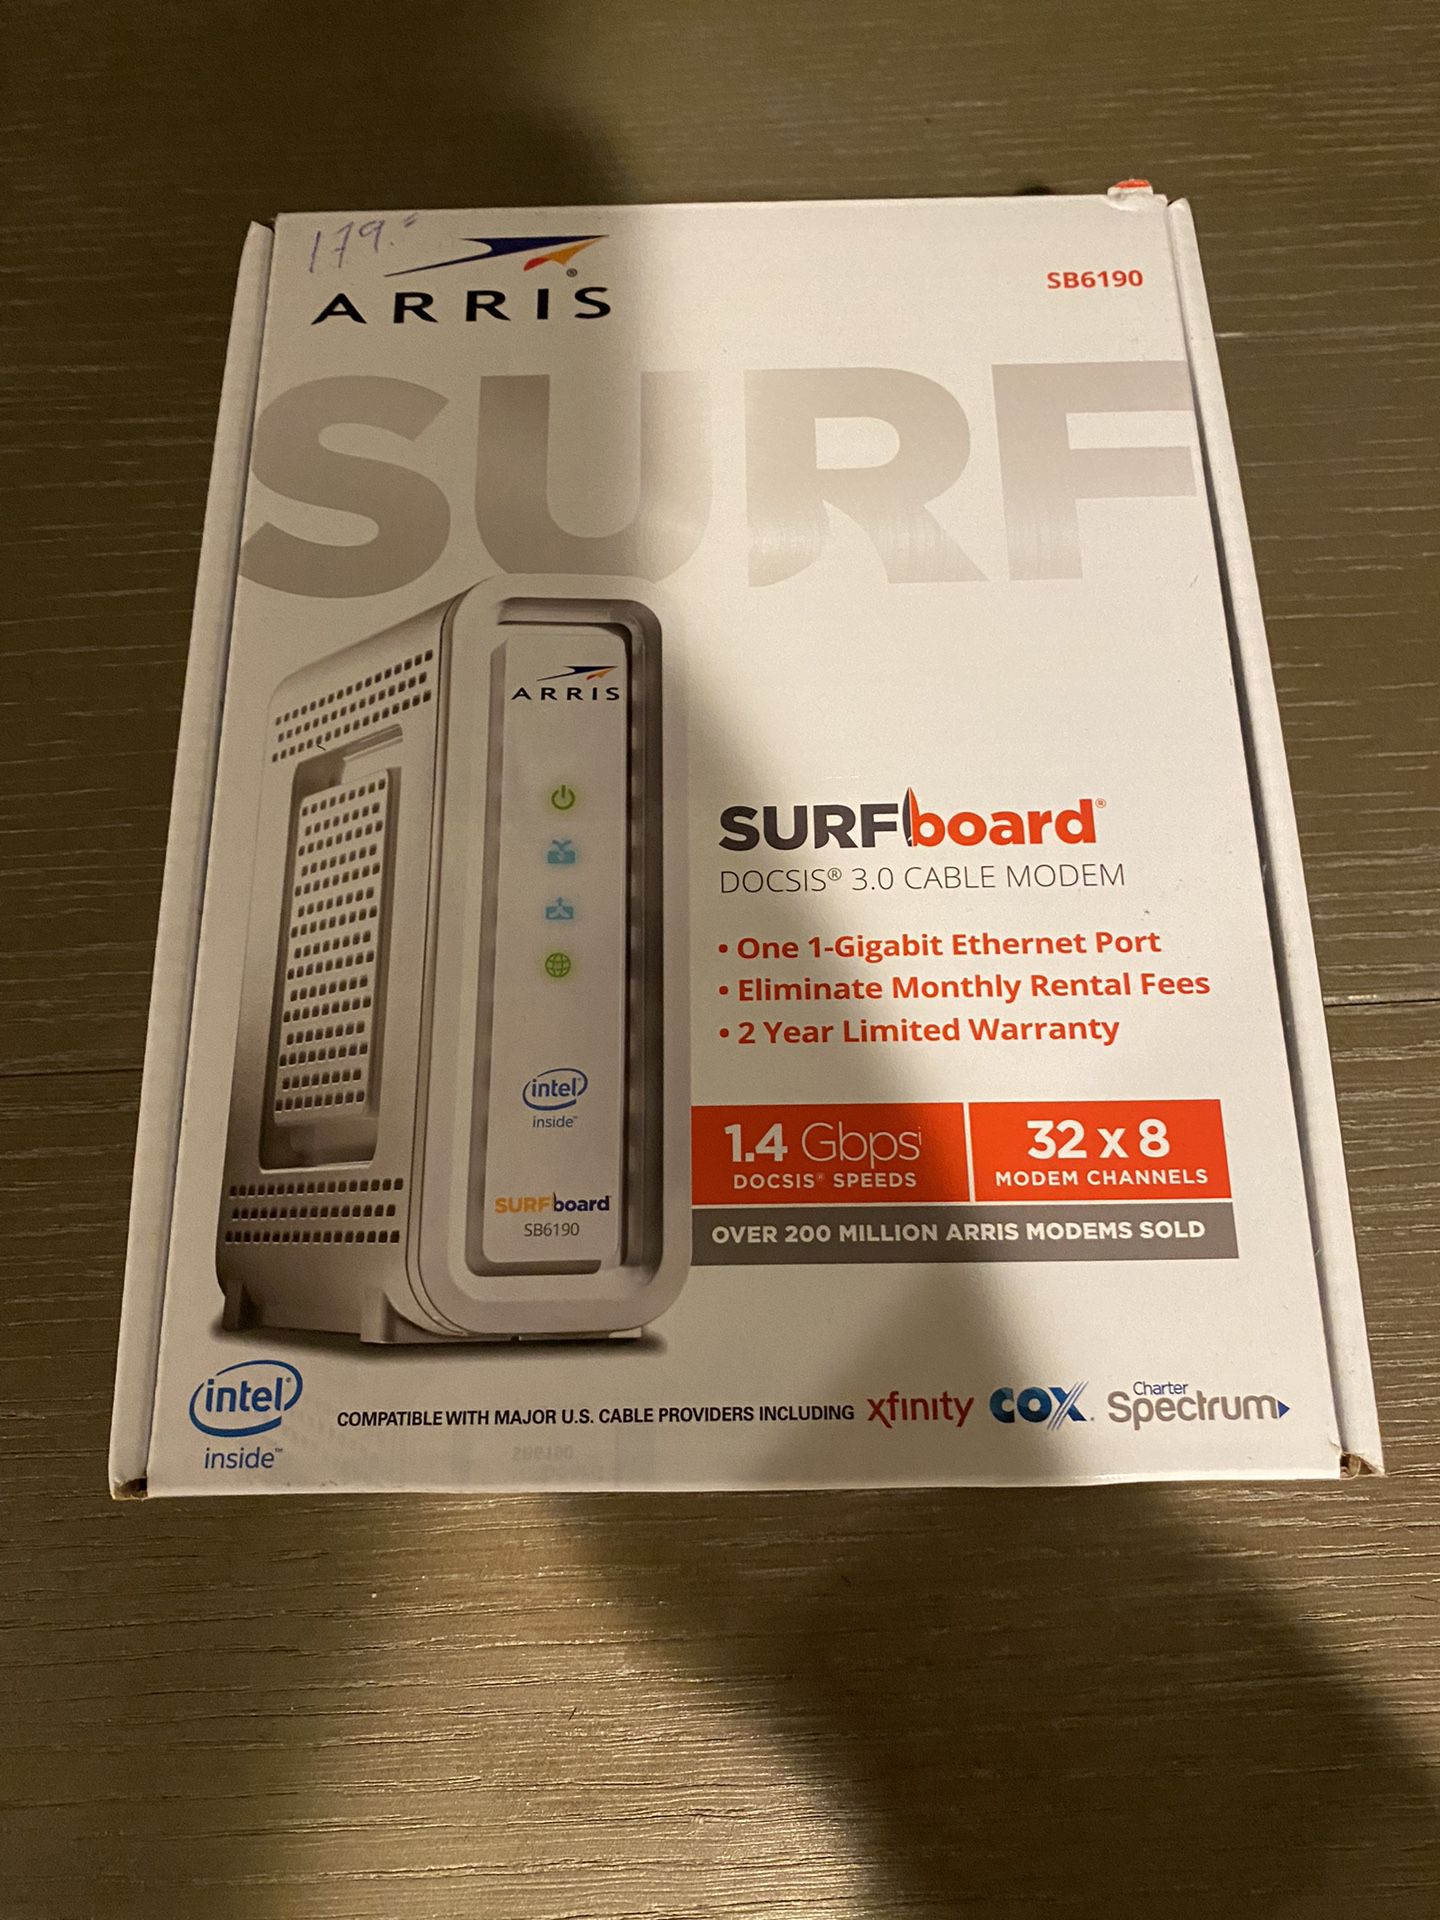 ARRIS Surfboard Docsis 3.0 Cable Modem